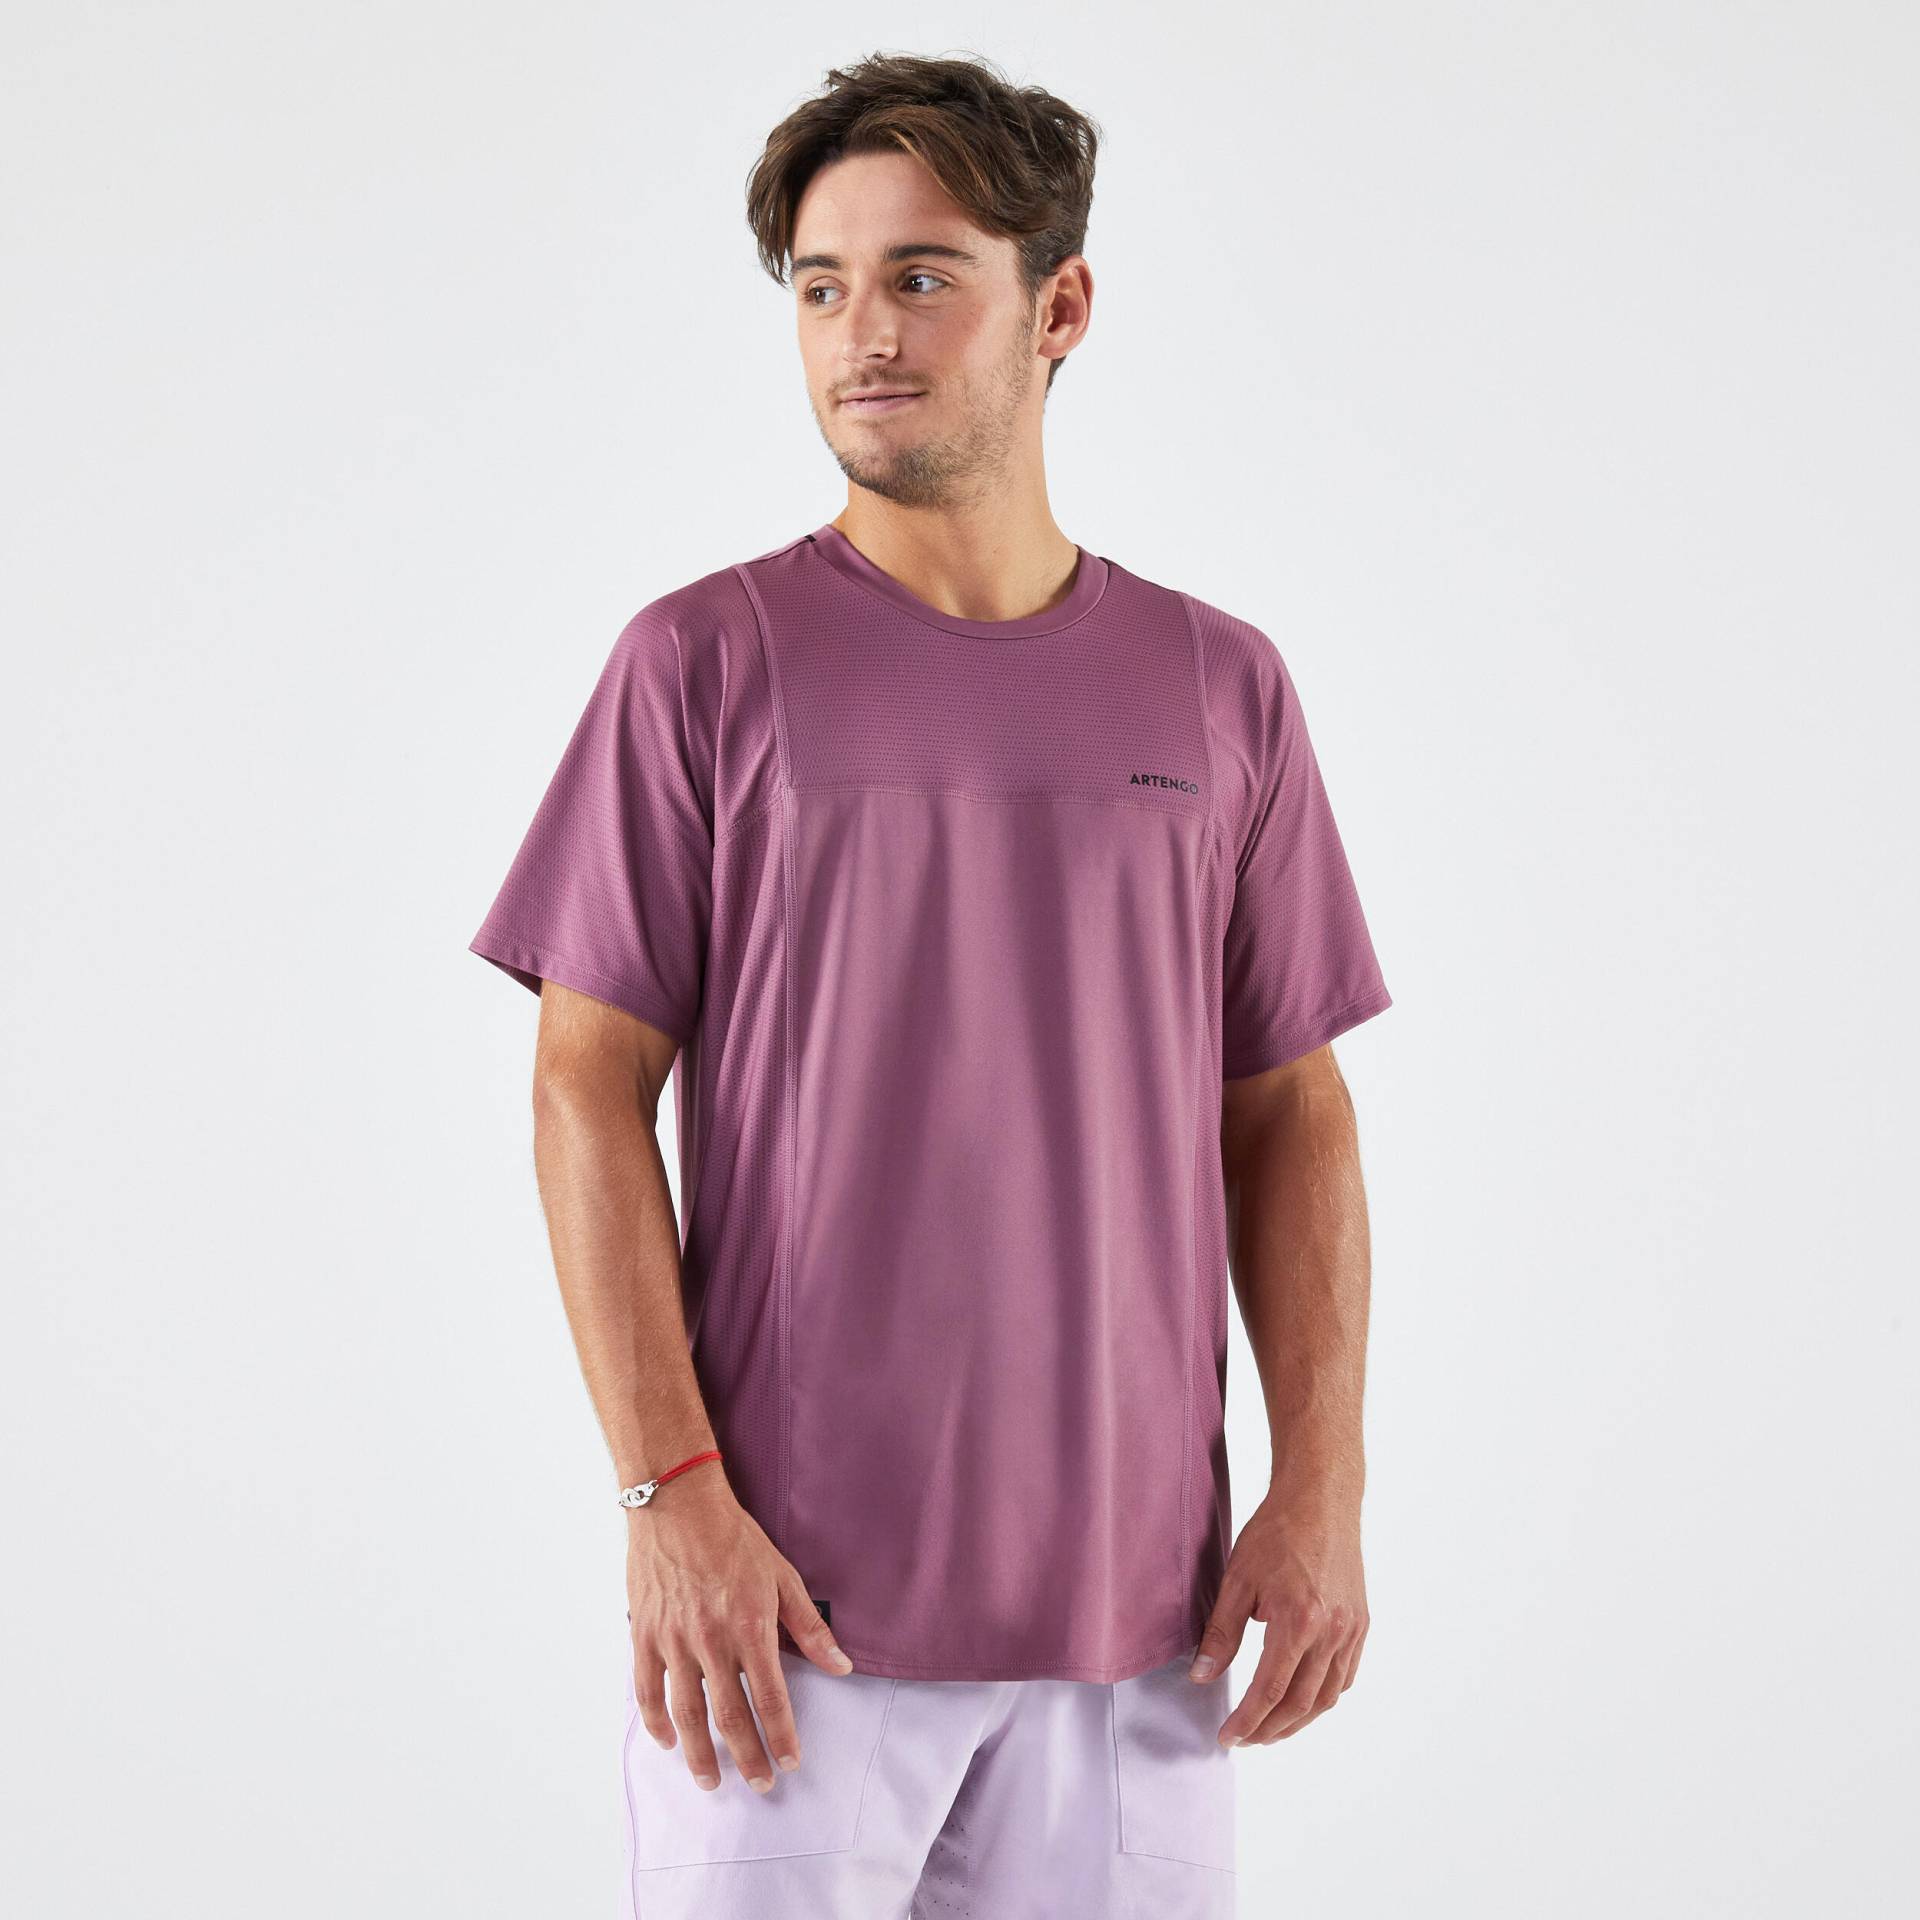 Tennis T-Shirt Herren - DRY Gaël Monfils lila von ARTENGO